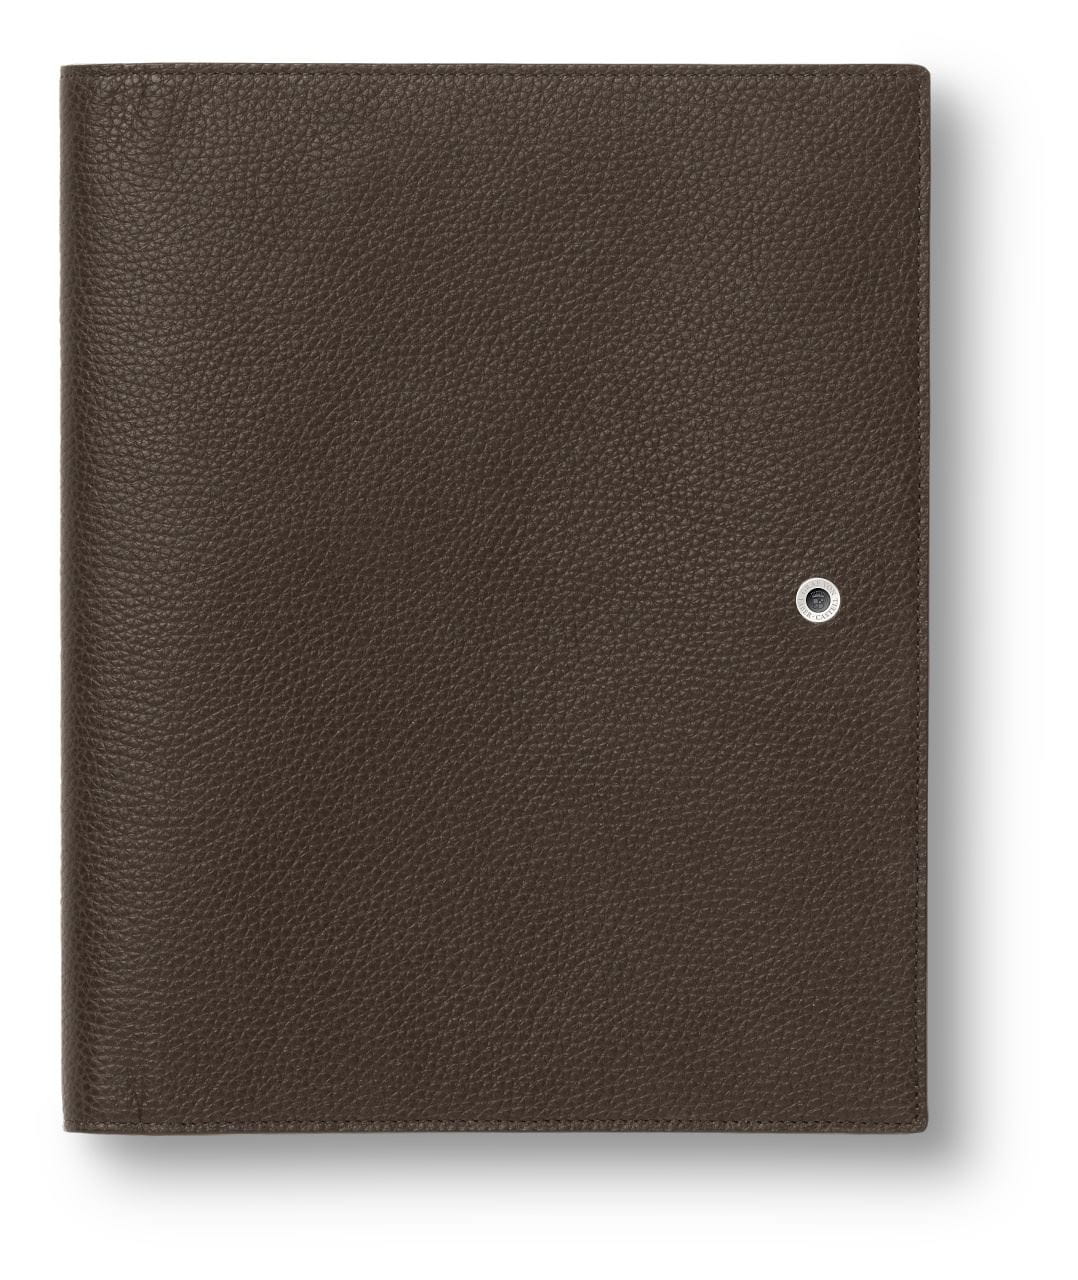 Graf-von-Faber-Castell - Writing case A5 Cashmere, dark brown